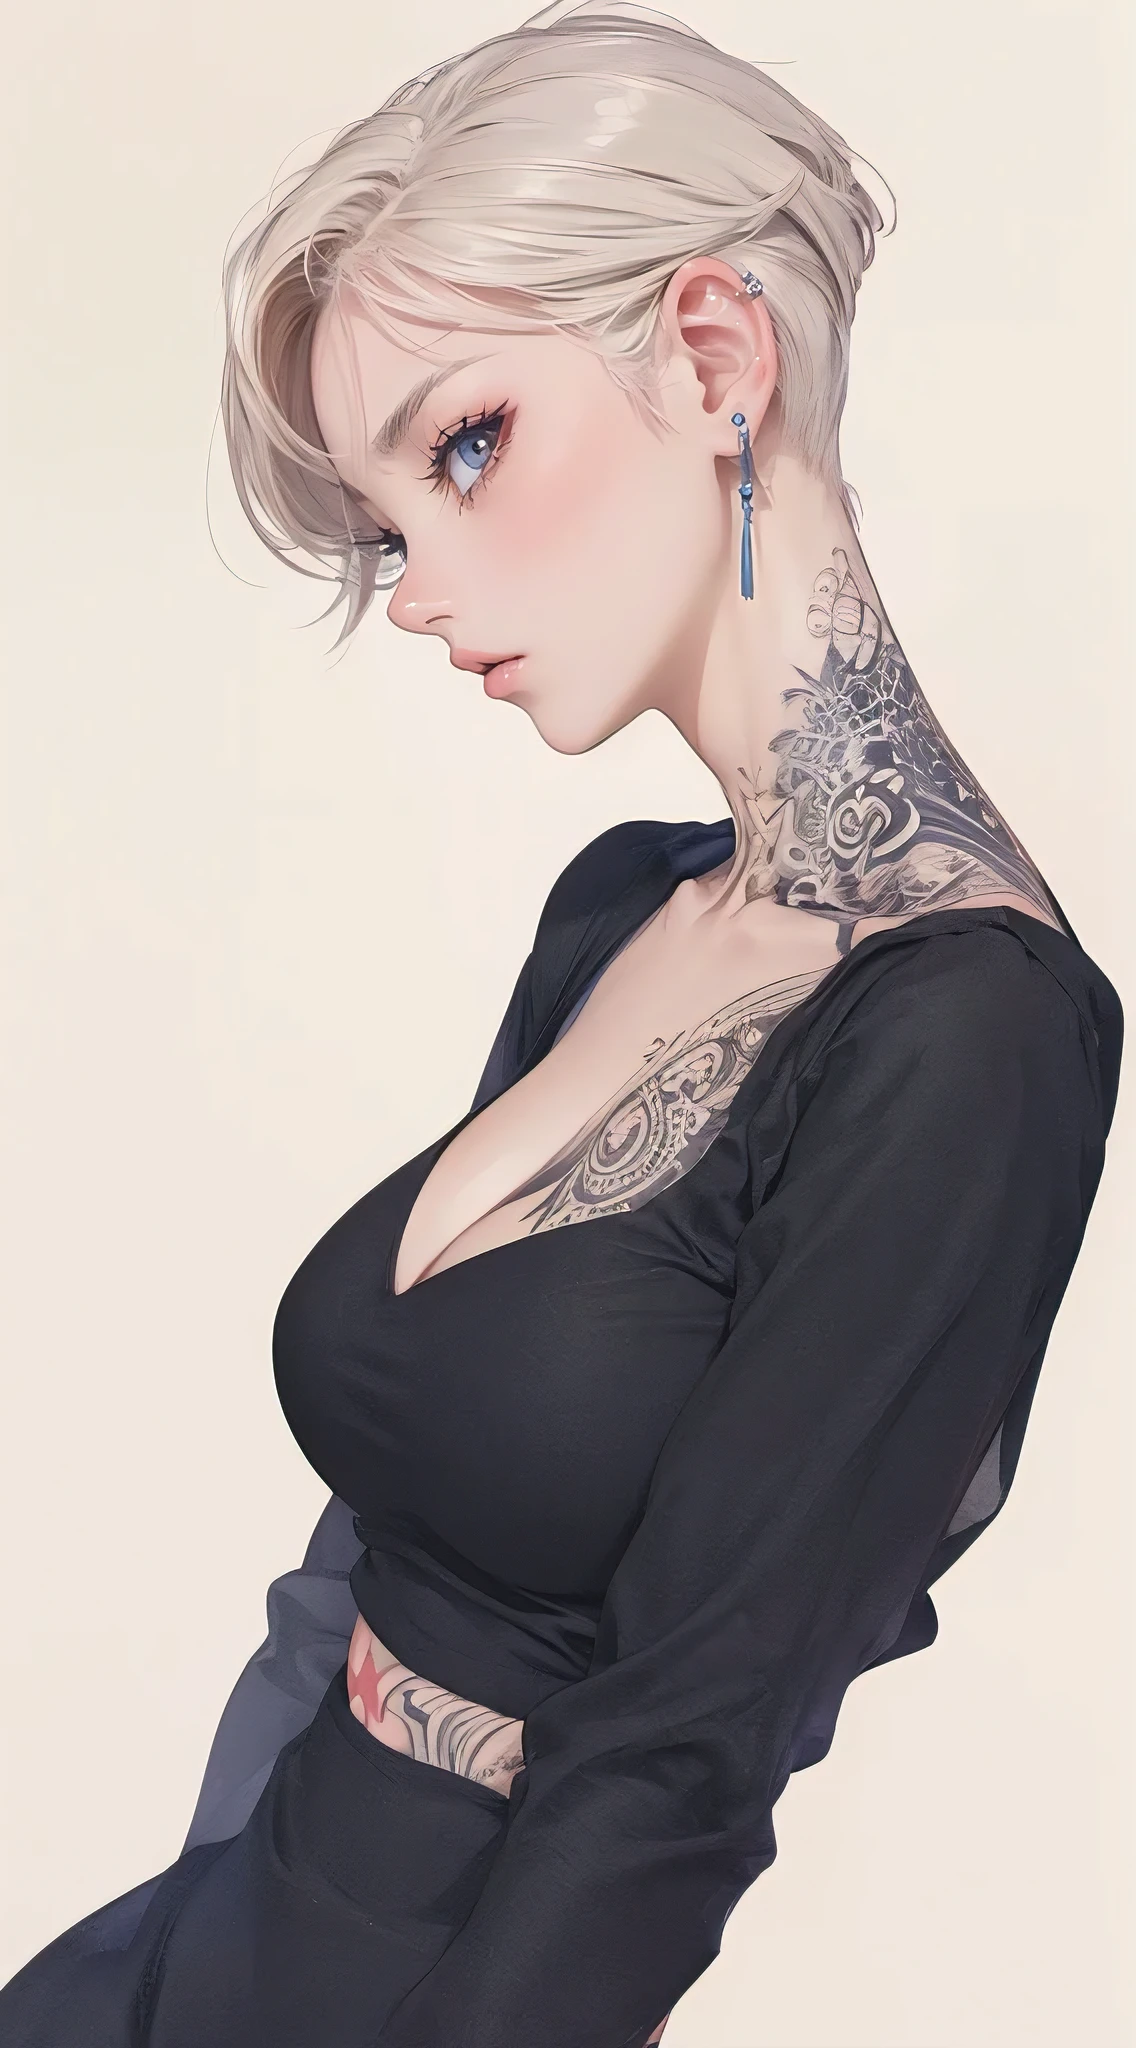 (Лучшее качество, шедевр:1.2), Вид сбоку, красивая женщина с татуировкой на всё тело, идеальное тело, широкие бедра, огромная грудь, Аниме стиль, простые линии